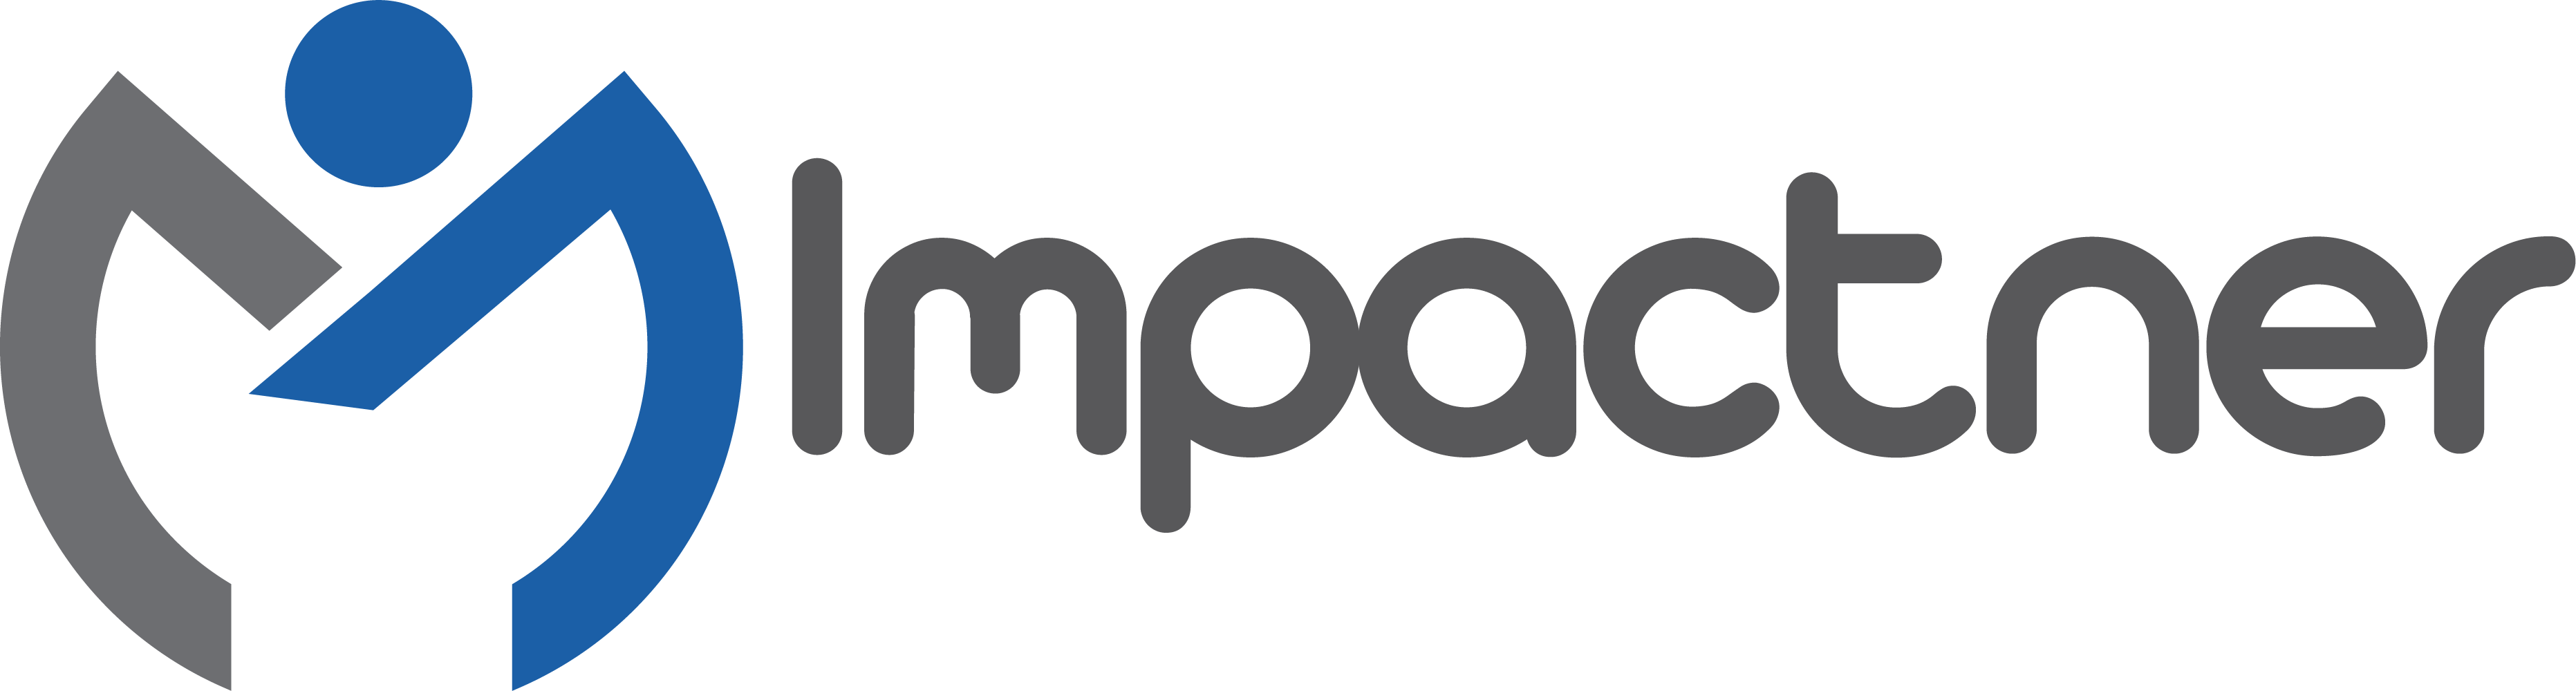 Course: Bootcamp Speed Track 1.0 : Perjalanan Mentoring StartUp Anda Dimulai! Logo